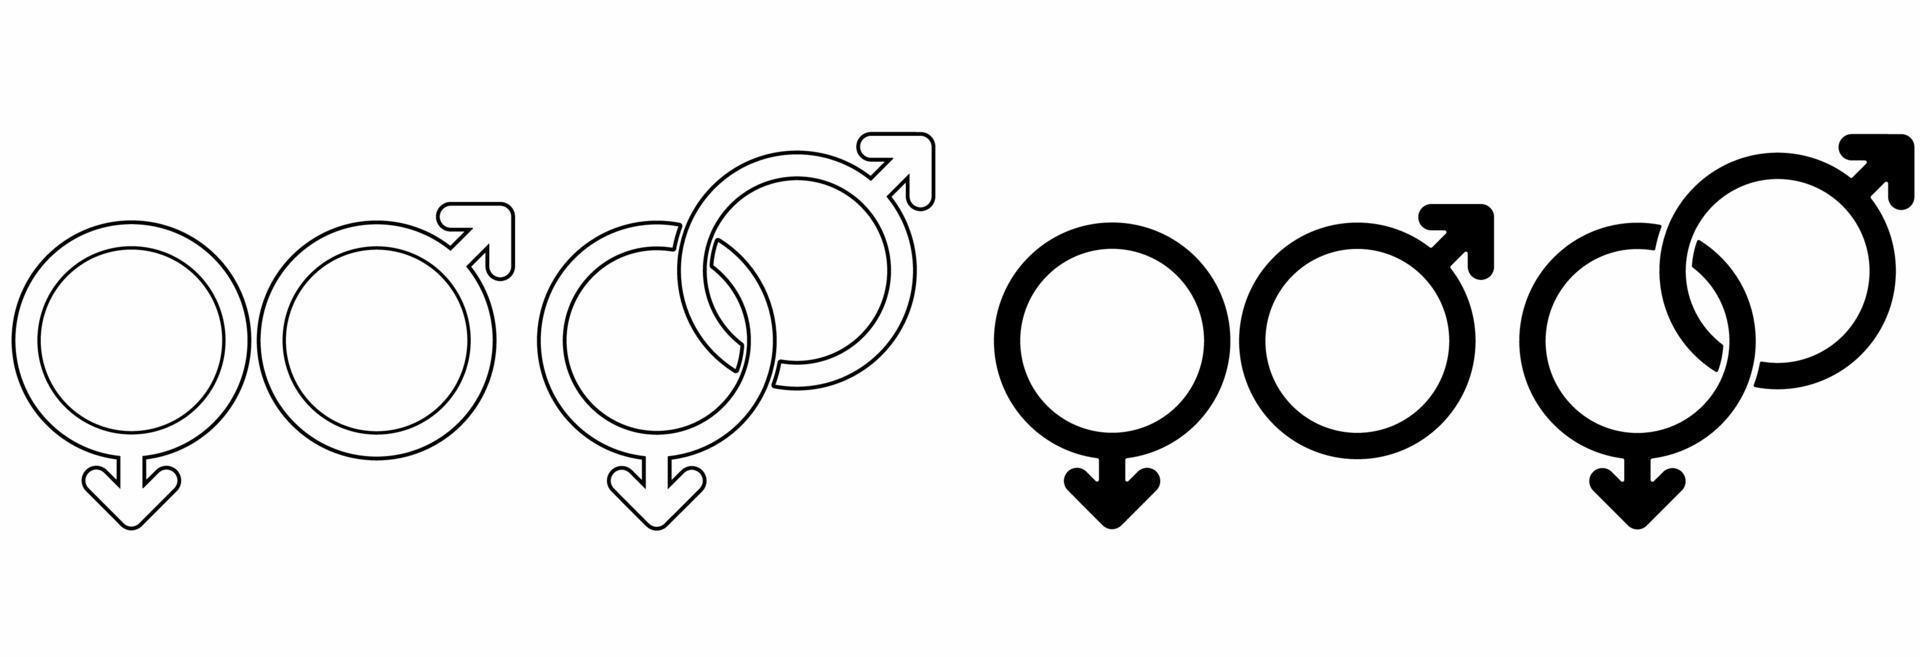 conjunto de ícones de gênero feminino e masculino silhueta de linha fina isolado no fundo branco vetor